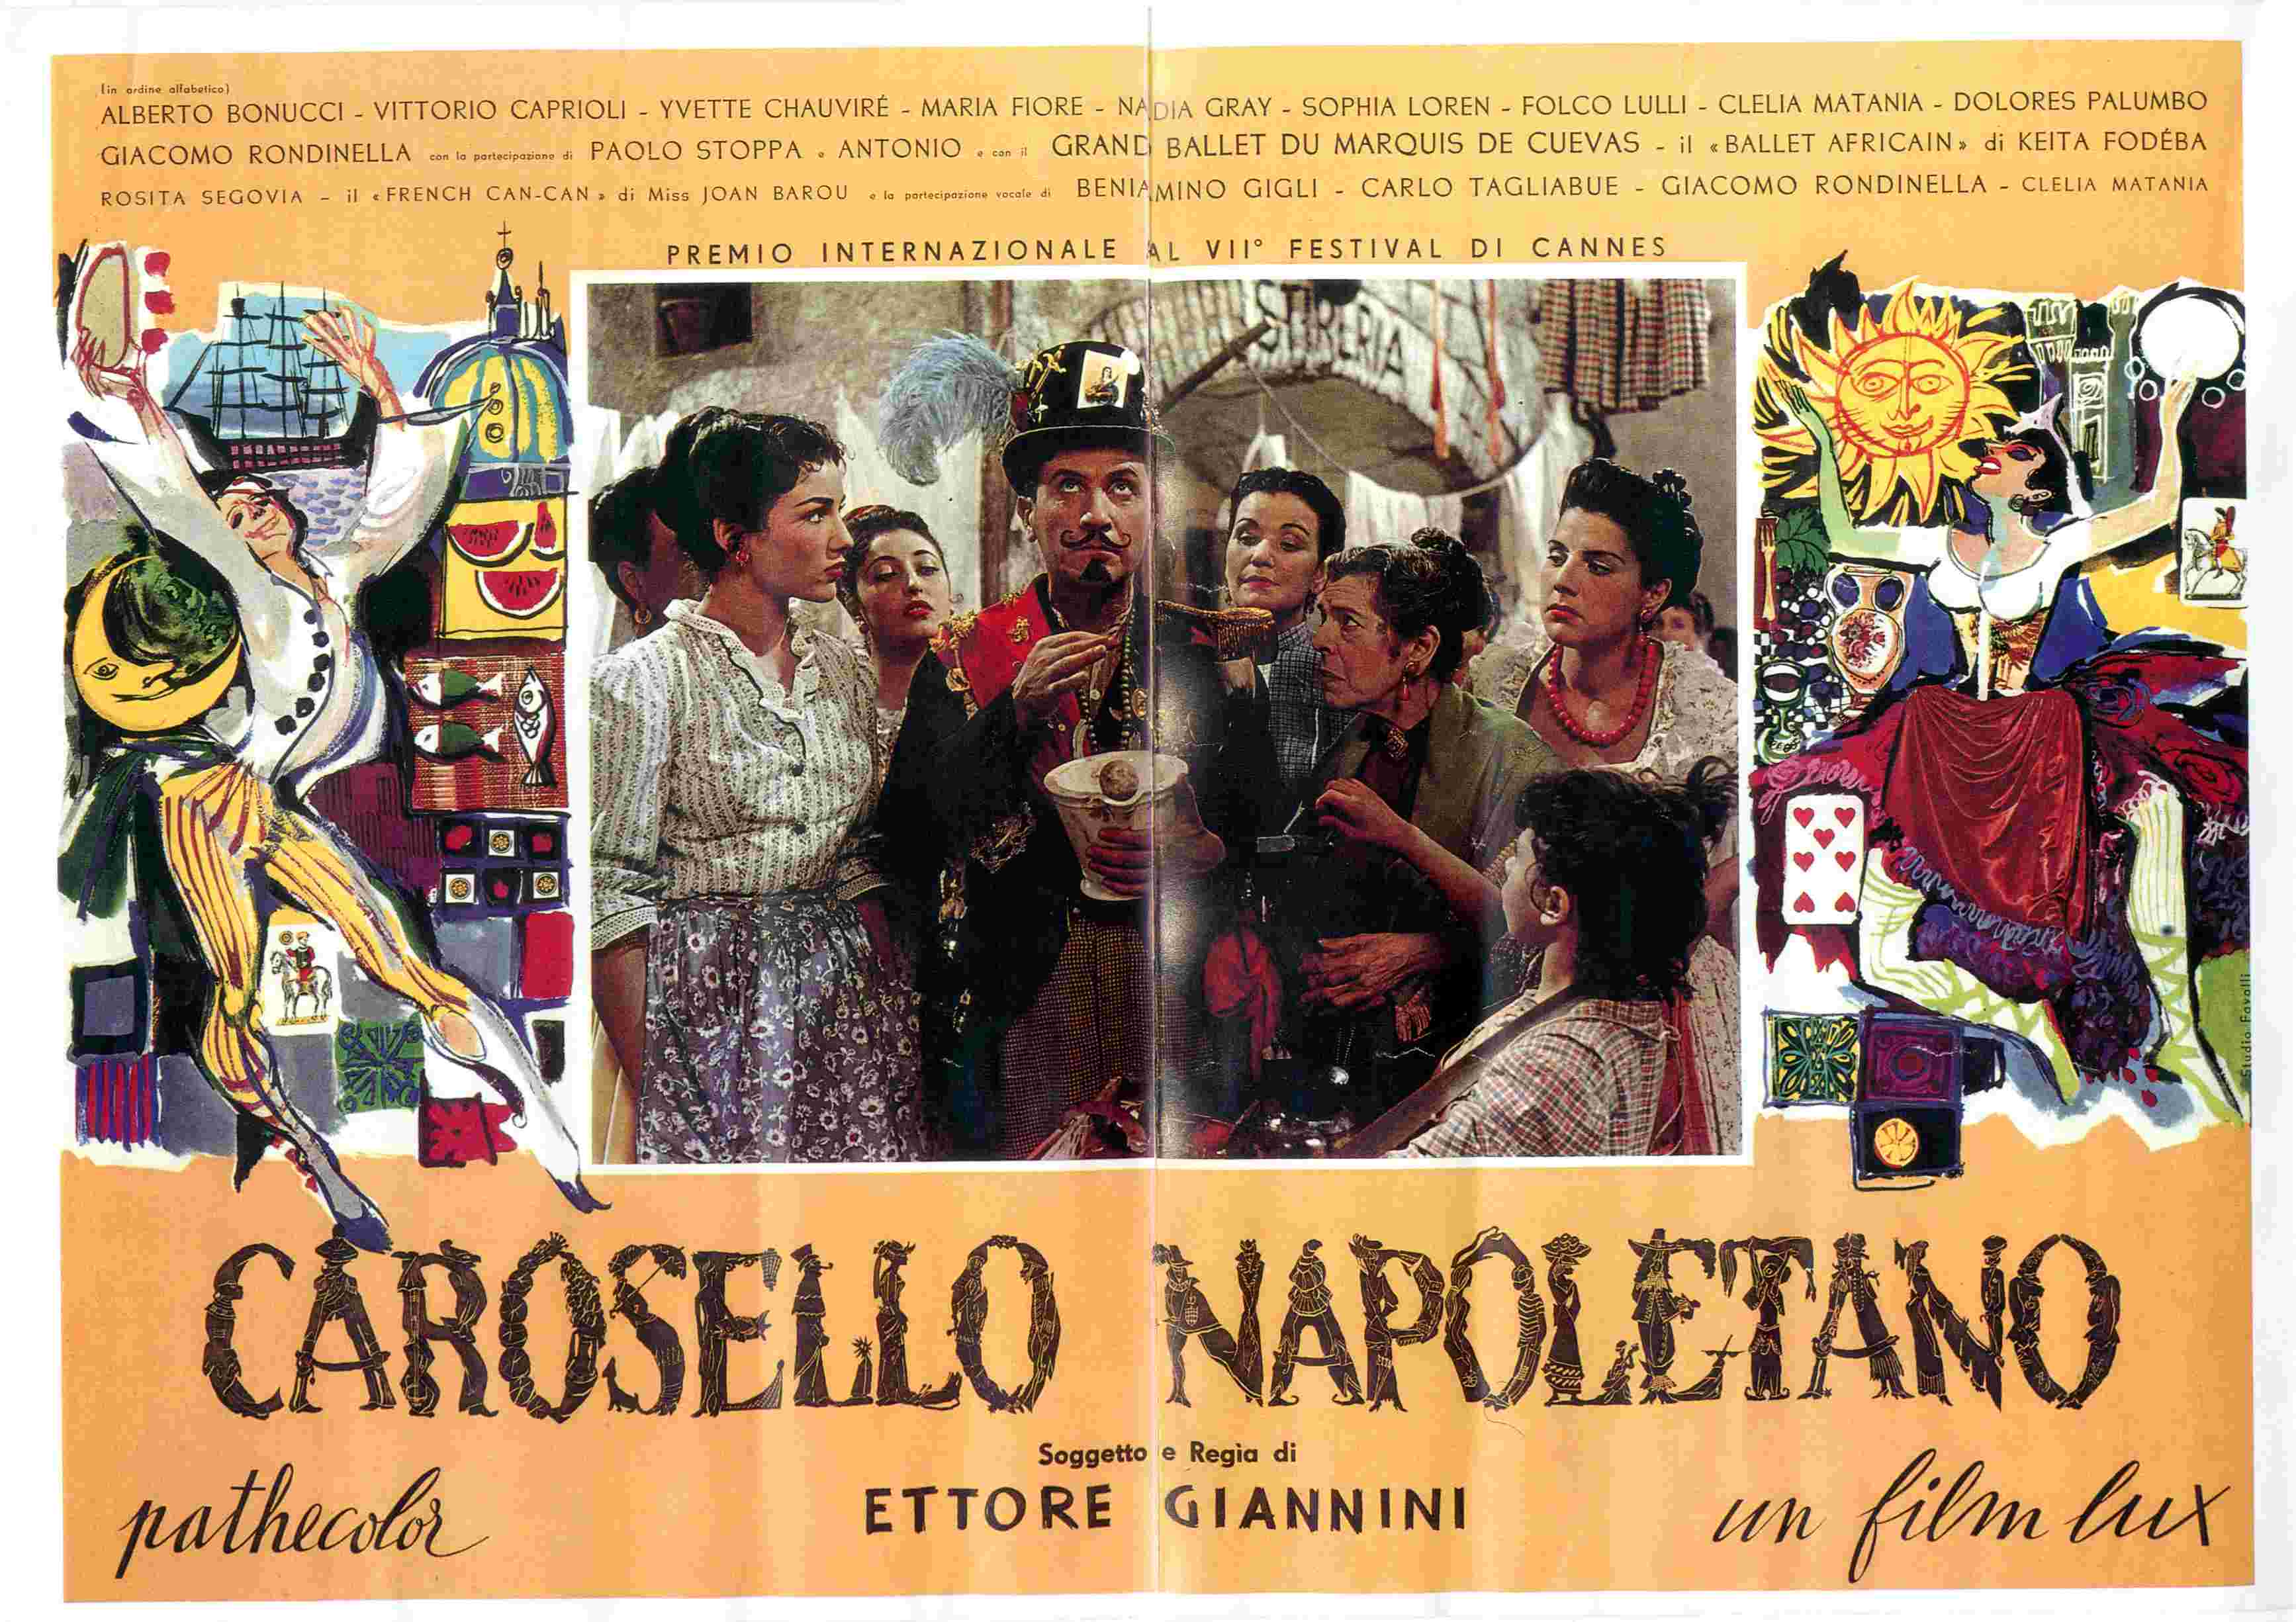 Seconda locandina del film "Carosello napoletano"